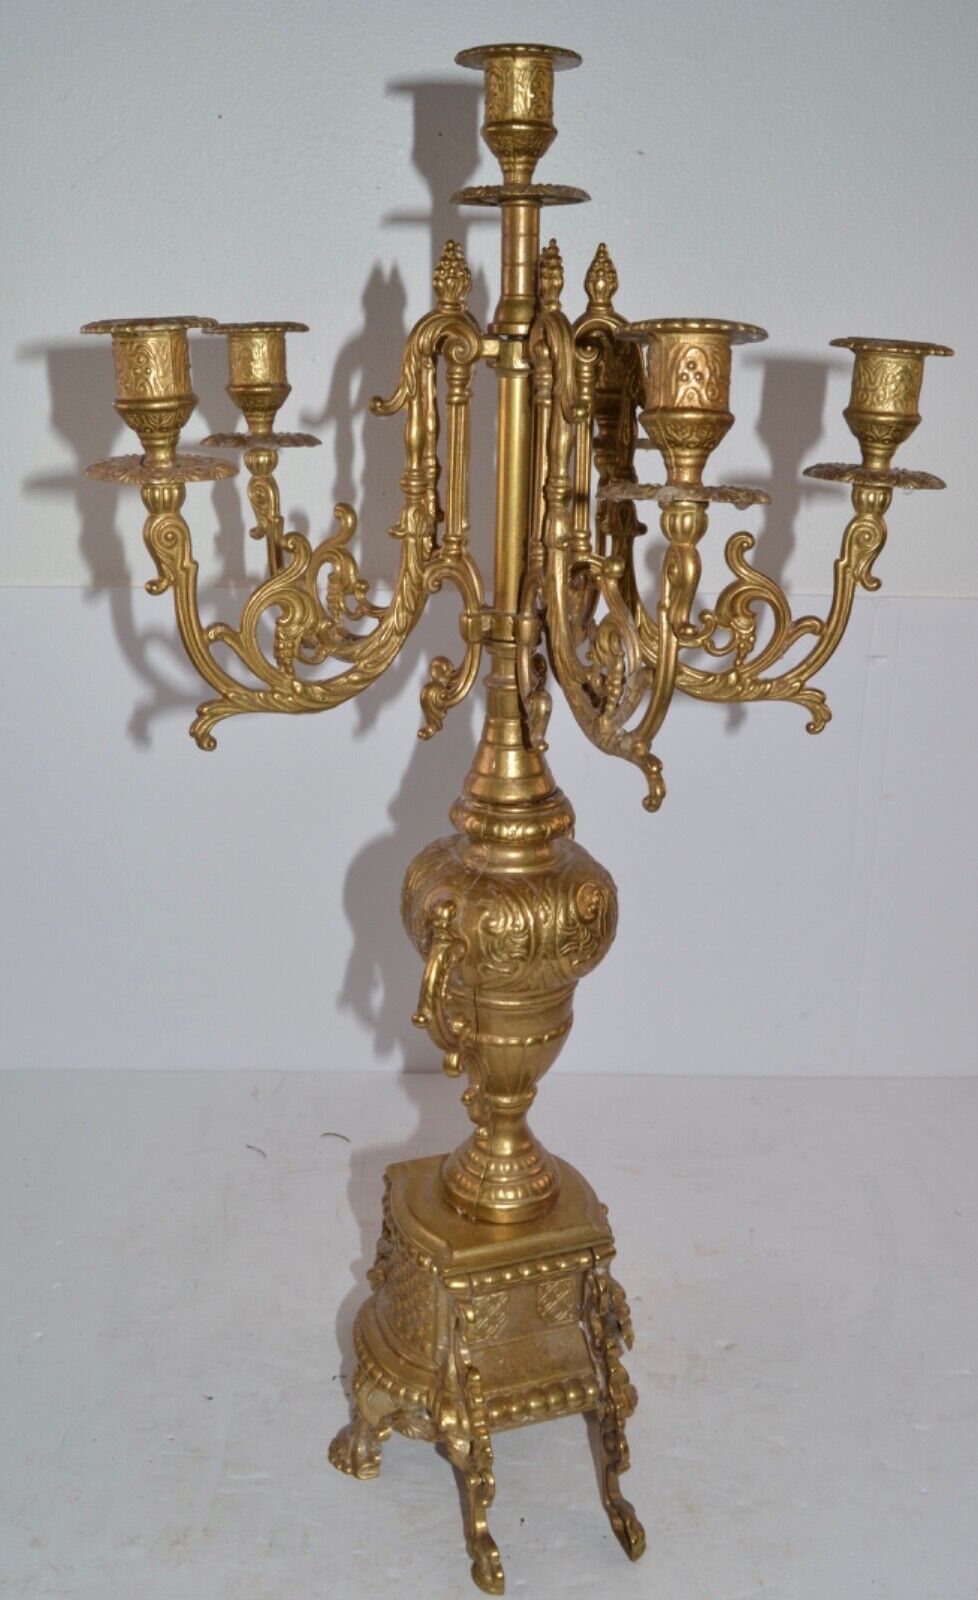 VTG Ornate Brass Brevettato Italy Candelabra Baroque Style 6 Candleholder 24”